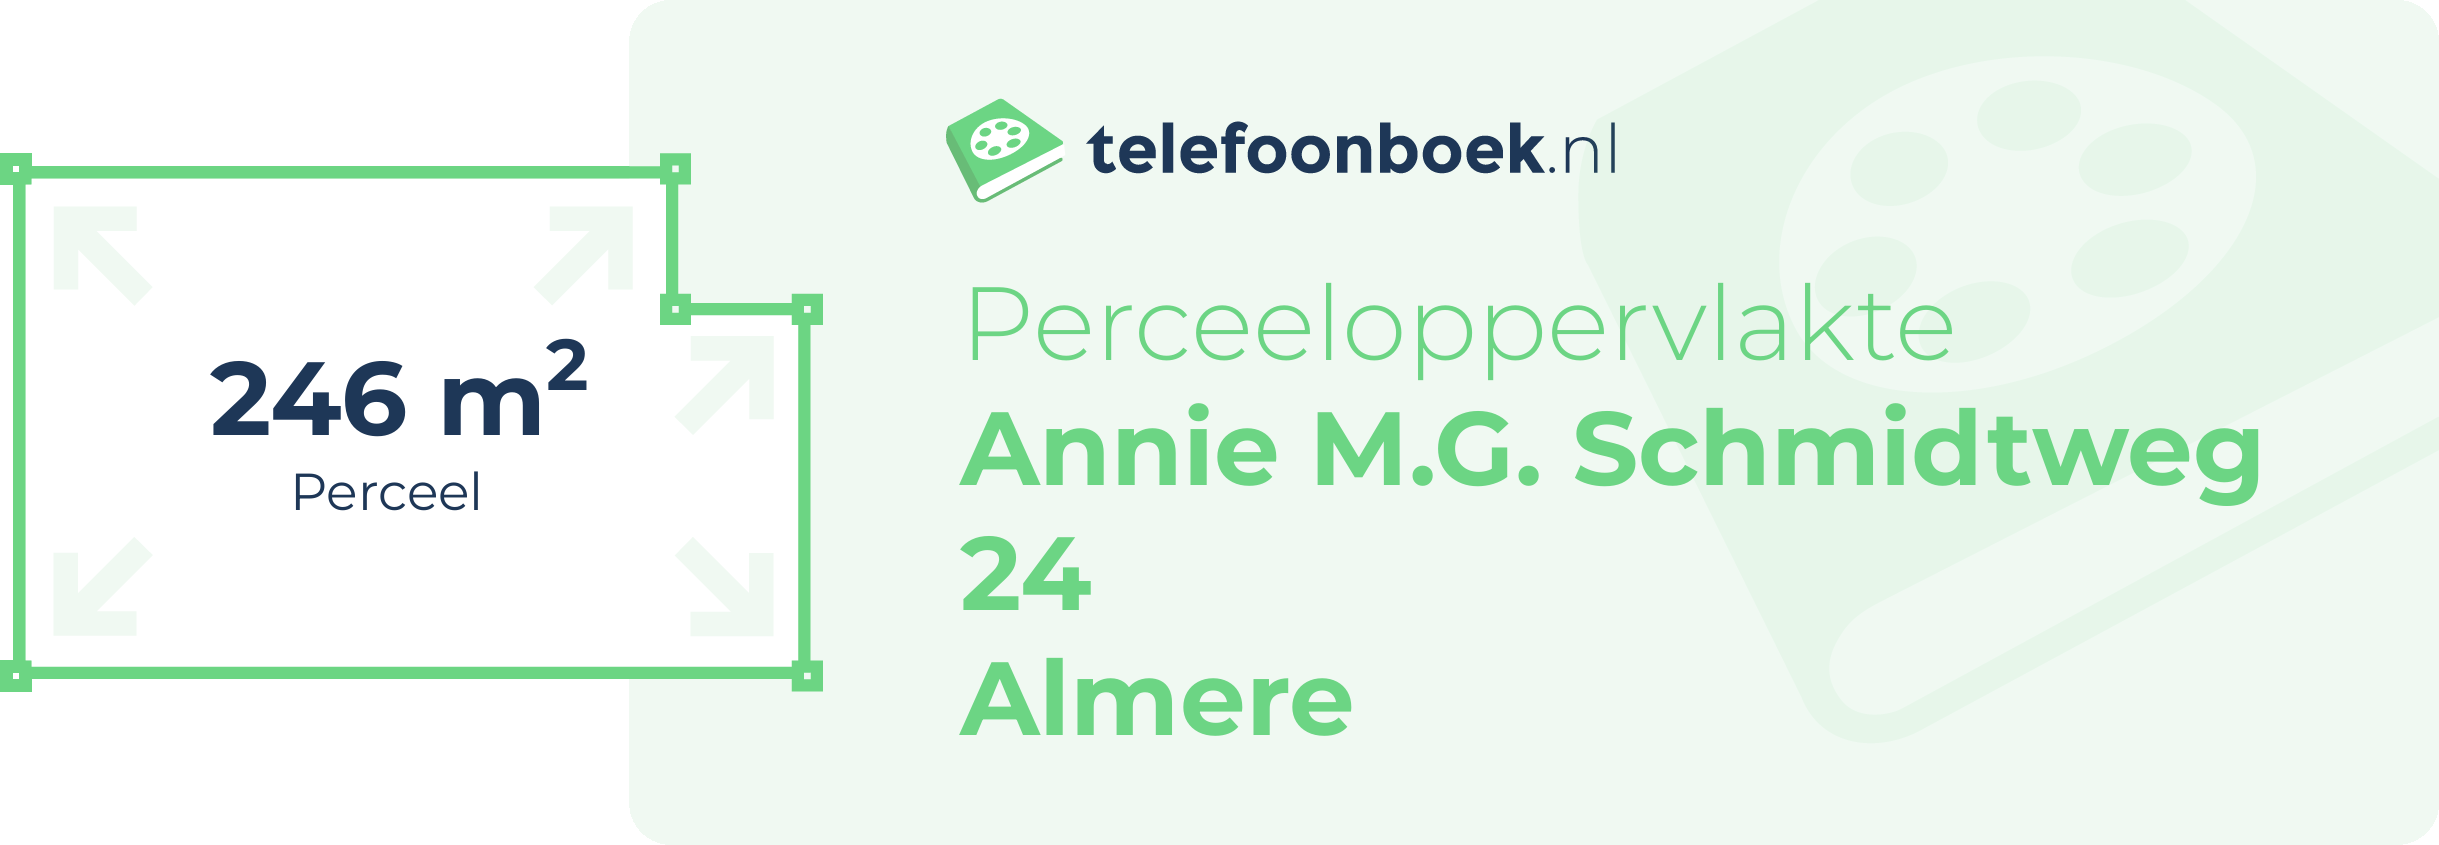 Perceeloppervlakte Annie M.G. Schmidtweg 24 Almere